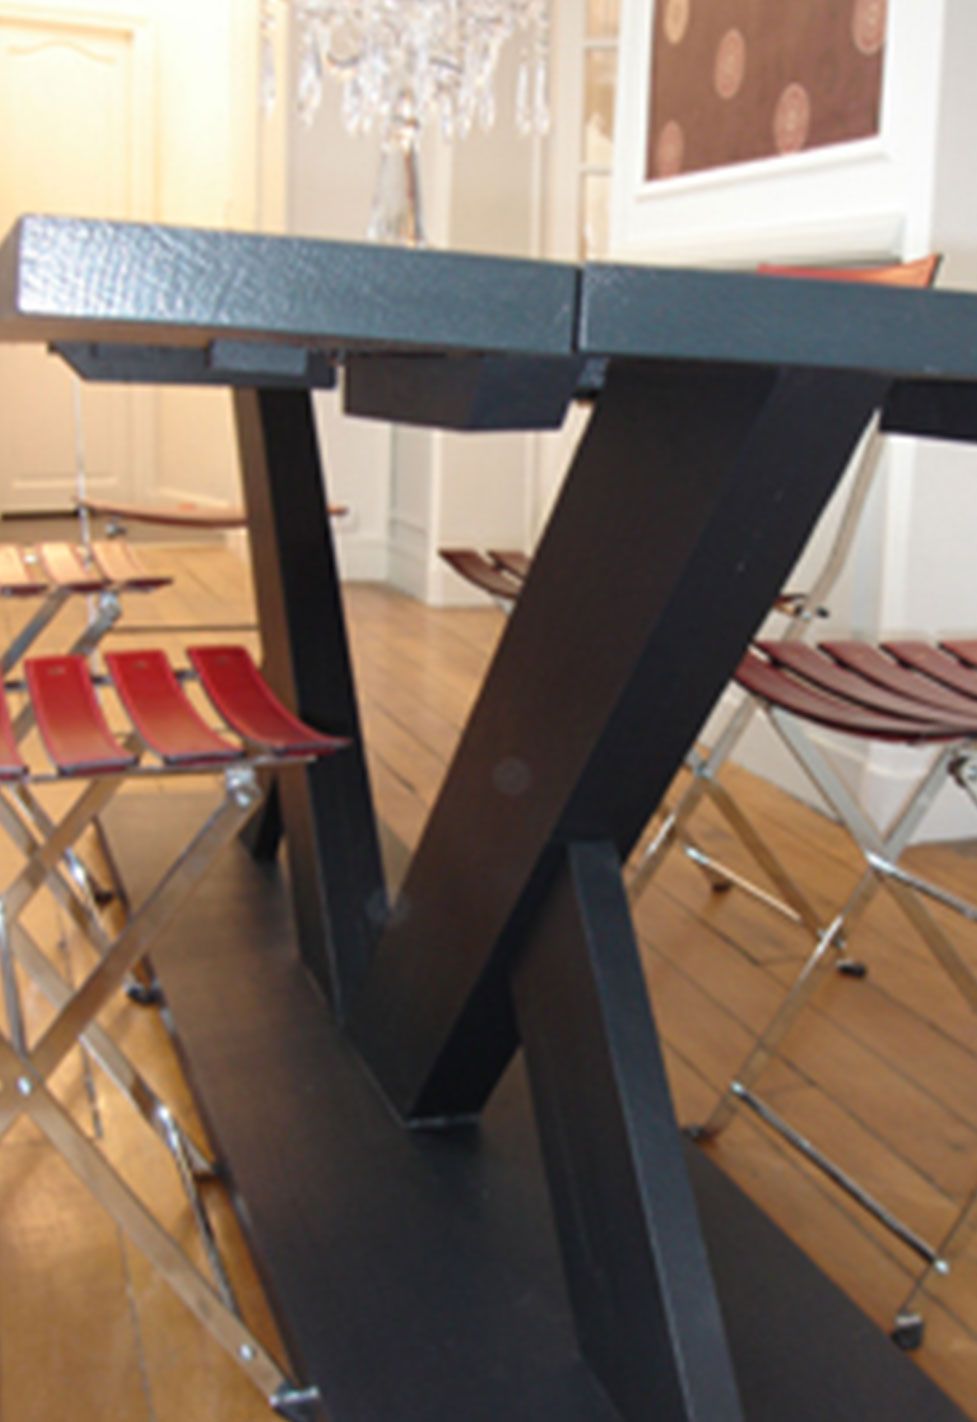 Table de la salle à manger d'un appartement ancien à Paris 6ème. Réalisation ID Interior Design par Anne-Laure Ferry-Adam, architecte d'intérieur à Genève.